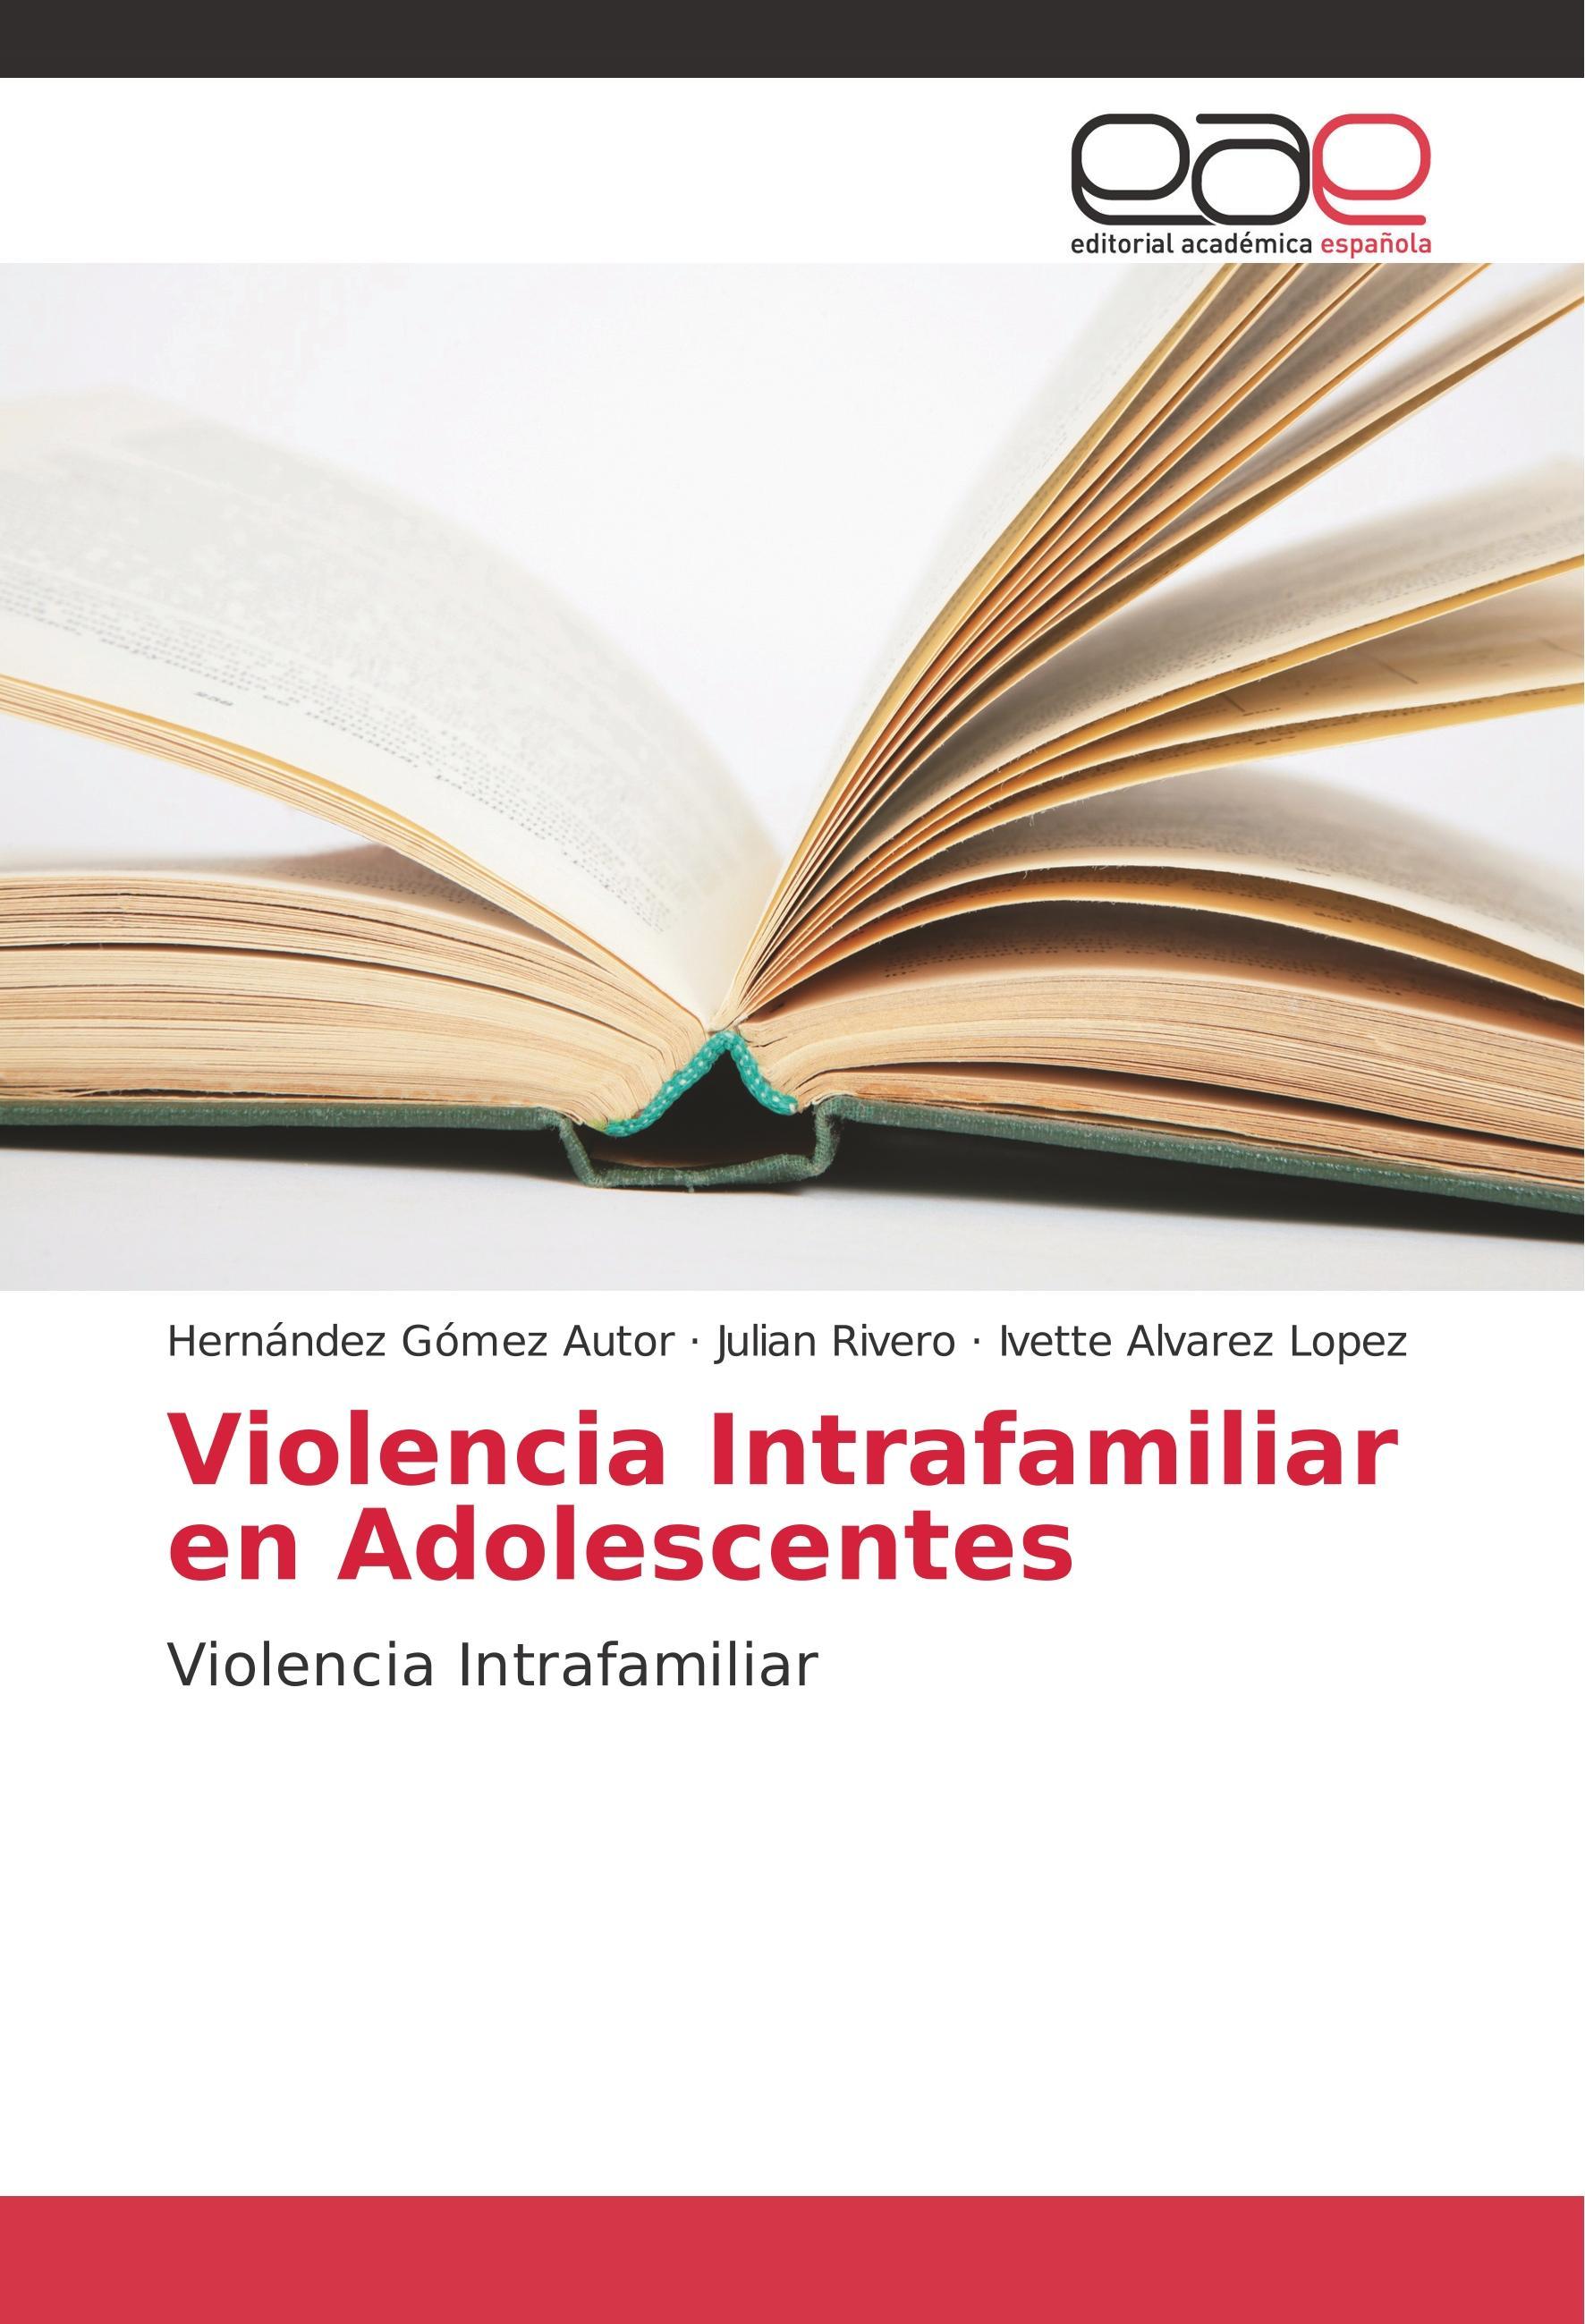 Violencia Intrafamiliar en Adolescentes - Gómez Hernández Rivero, Julián Alvarez Lopez, Ivette